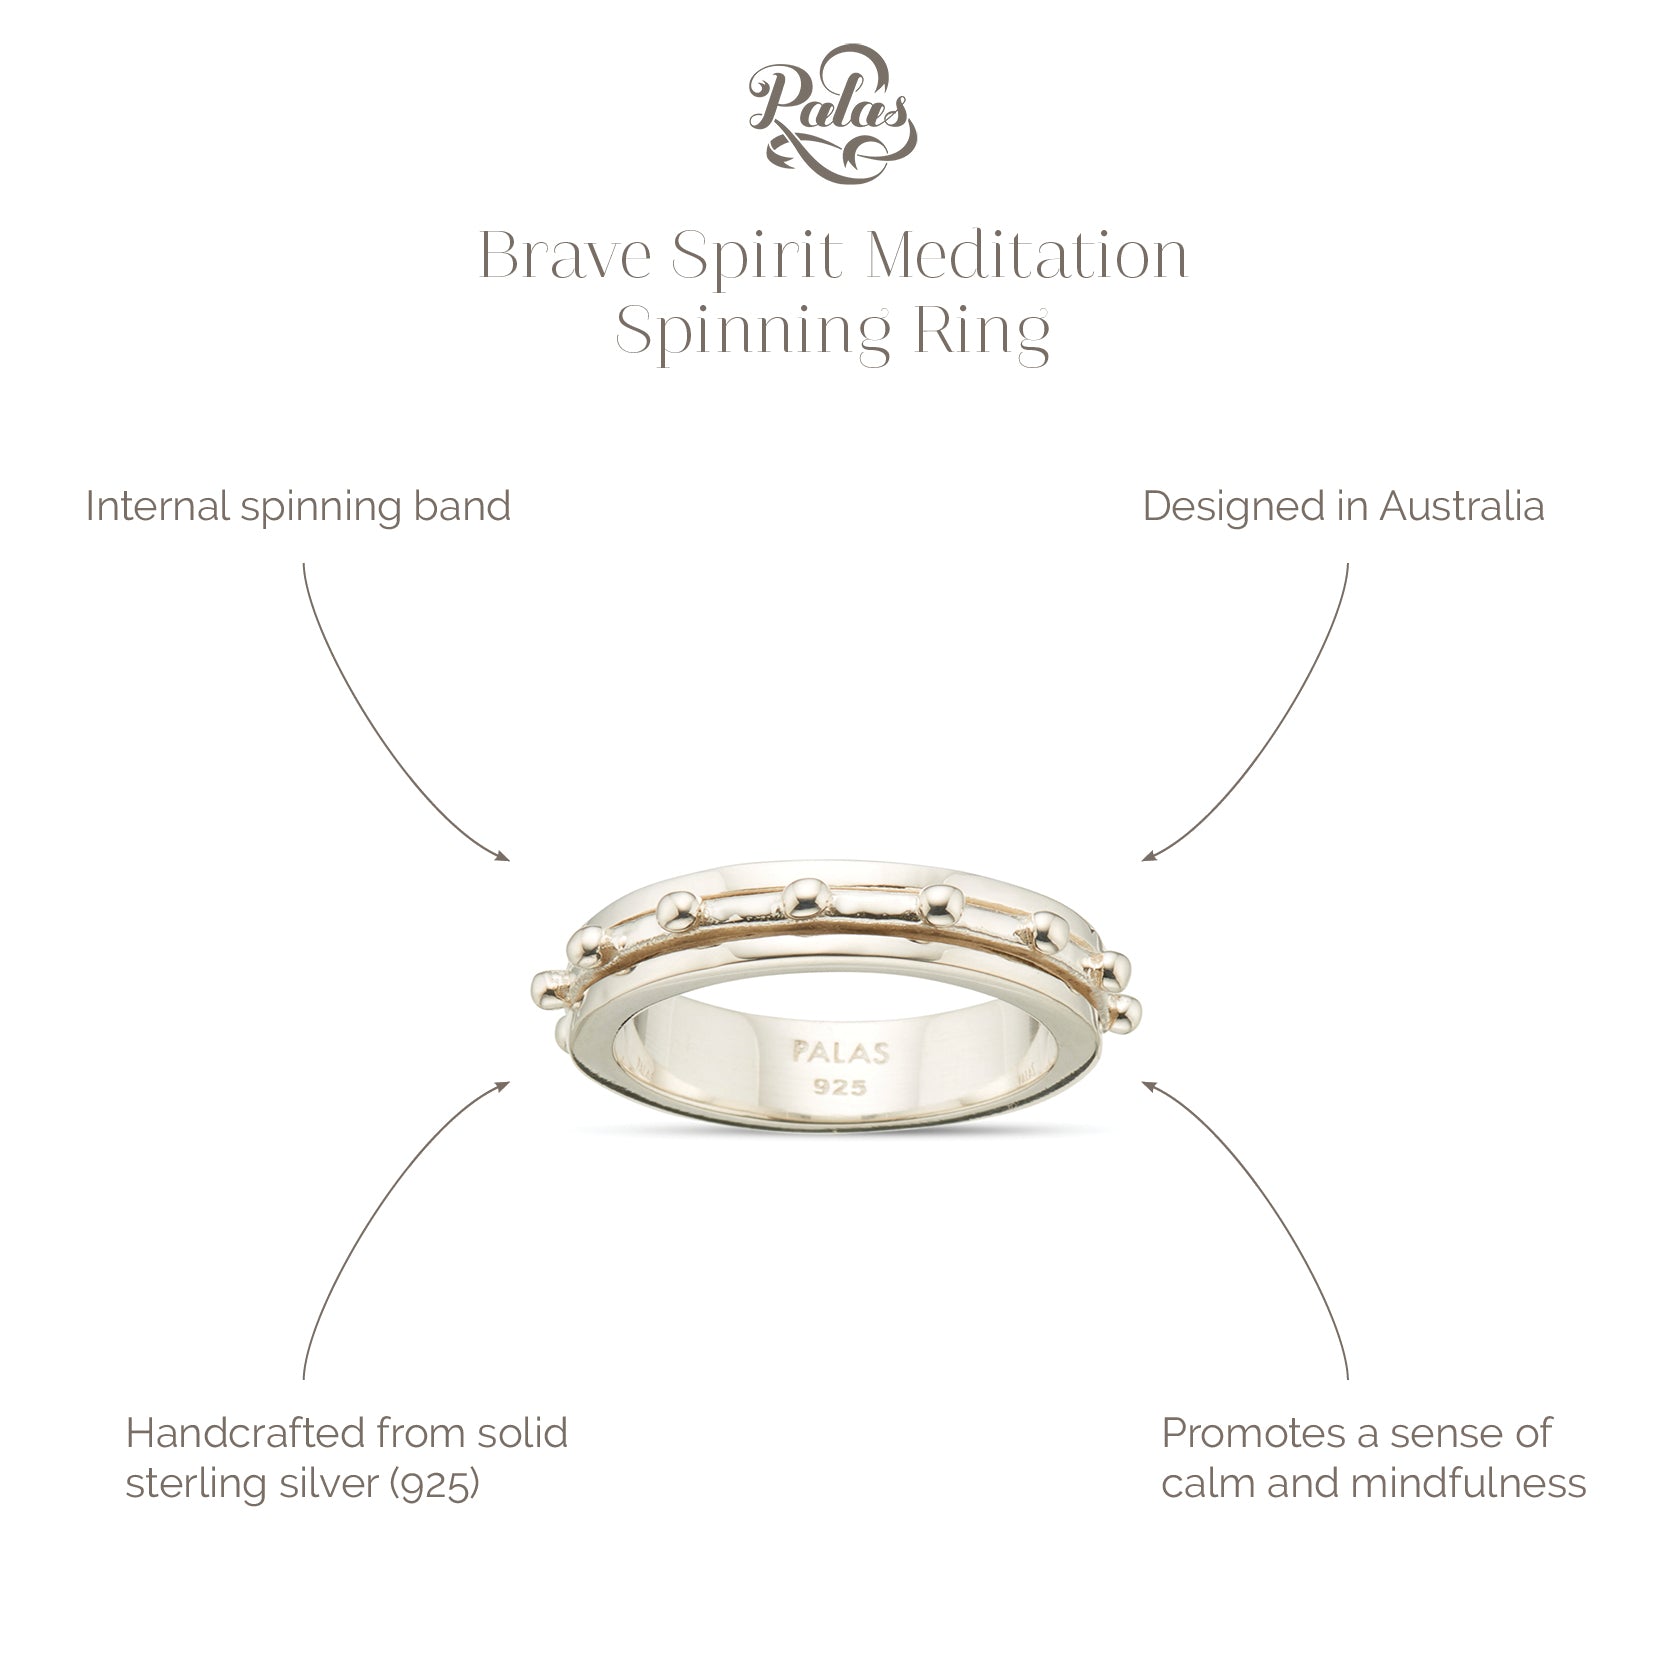 Brave spirit meditation spinning ring